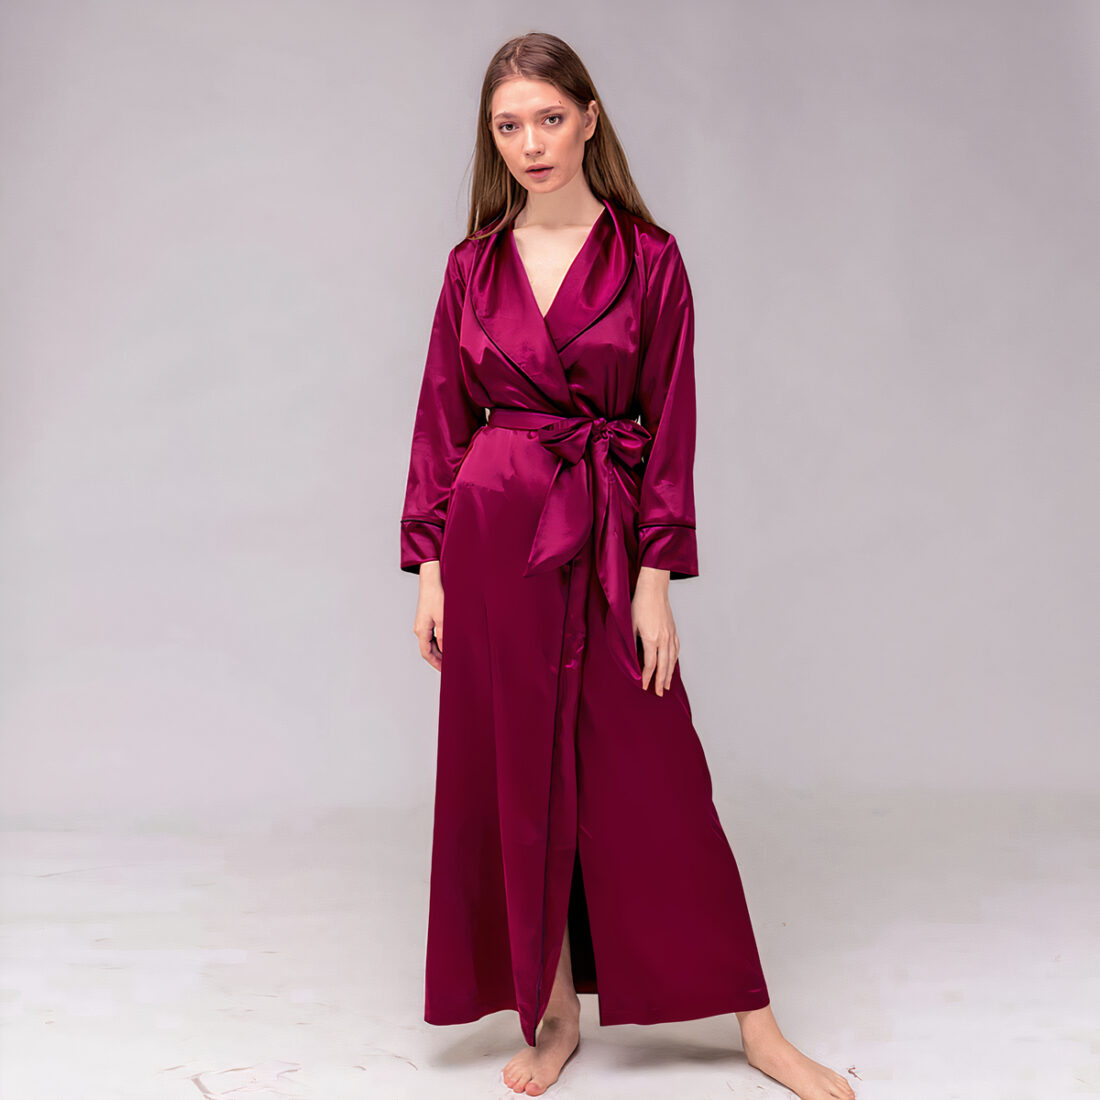 Robe de chambre élégante en satin pour femme Robe De Chambre Elegante En Satin Pour Femme 3